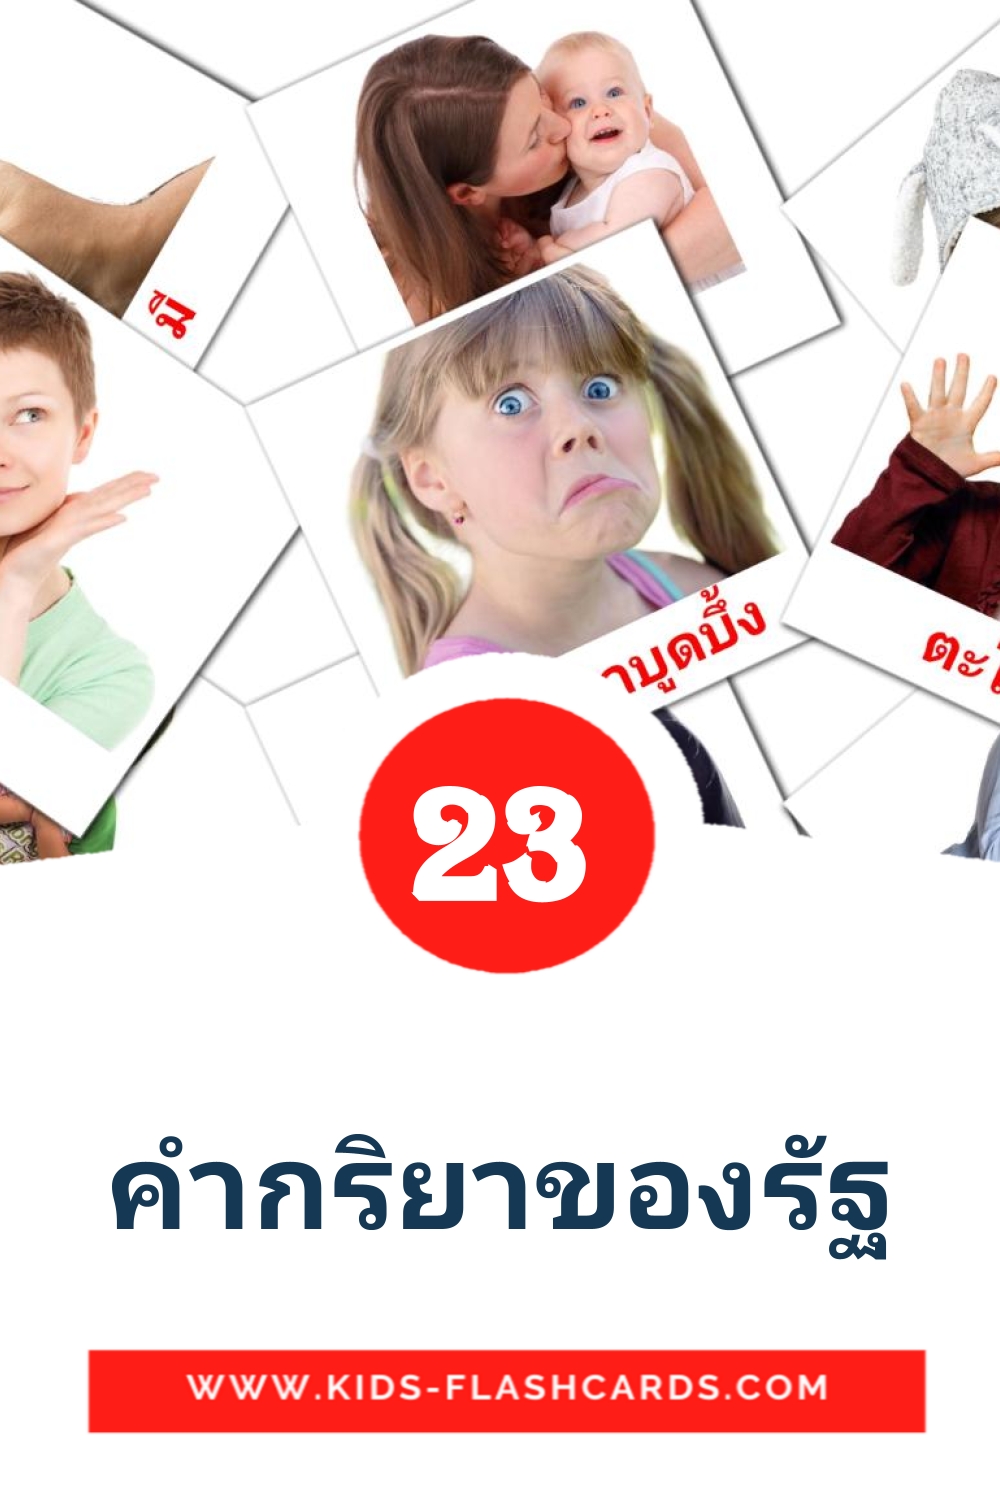 23 tarjetas didacticas de คํากริยาของรัฐ para el jardín de infancia en tailandés